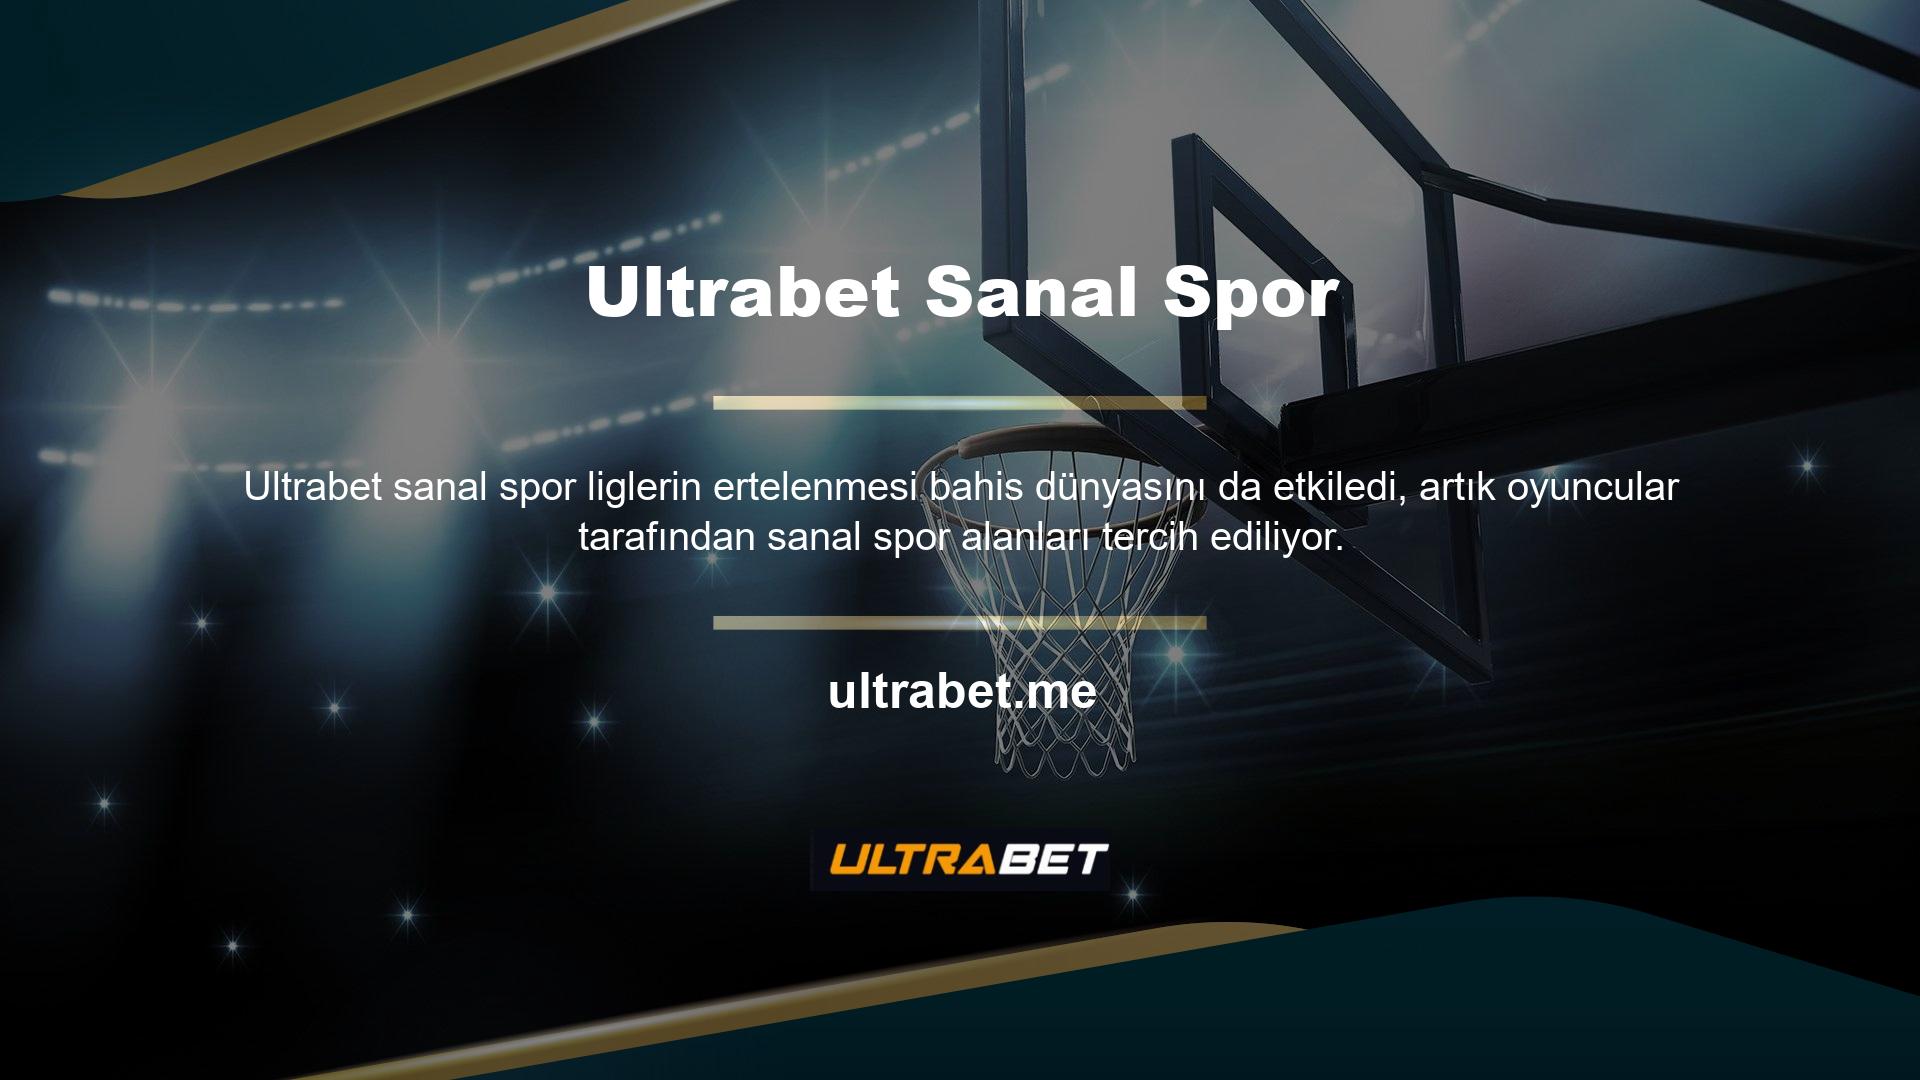 Ultrabet, e-spor sektöründe sanal bahis ve toplu ek gelirlerle etkinliğe bambaşka bir bakış açısı getiriyor